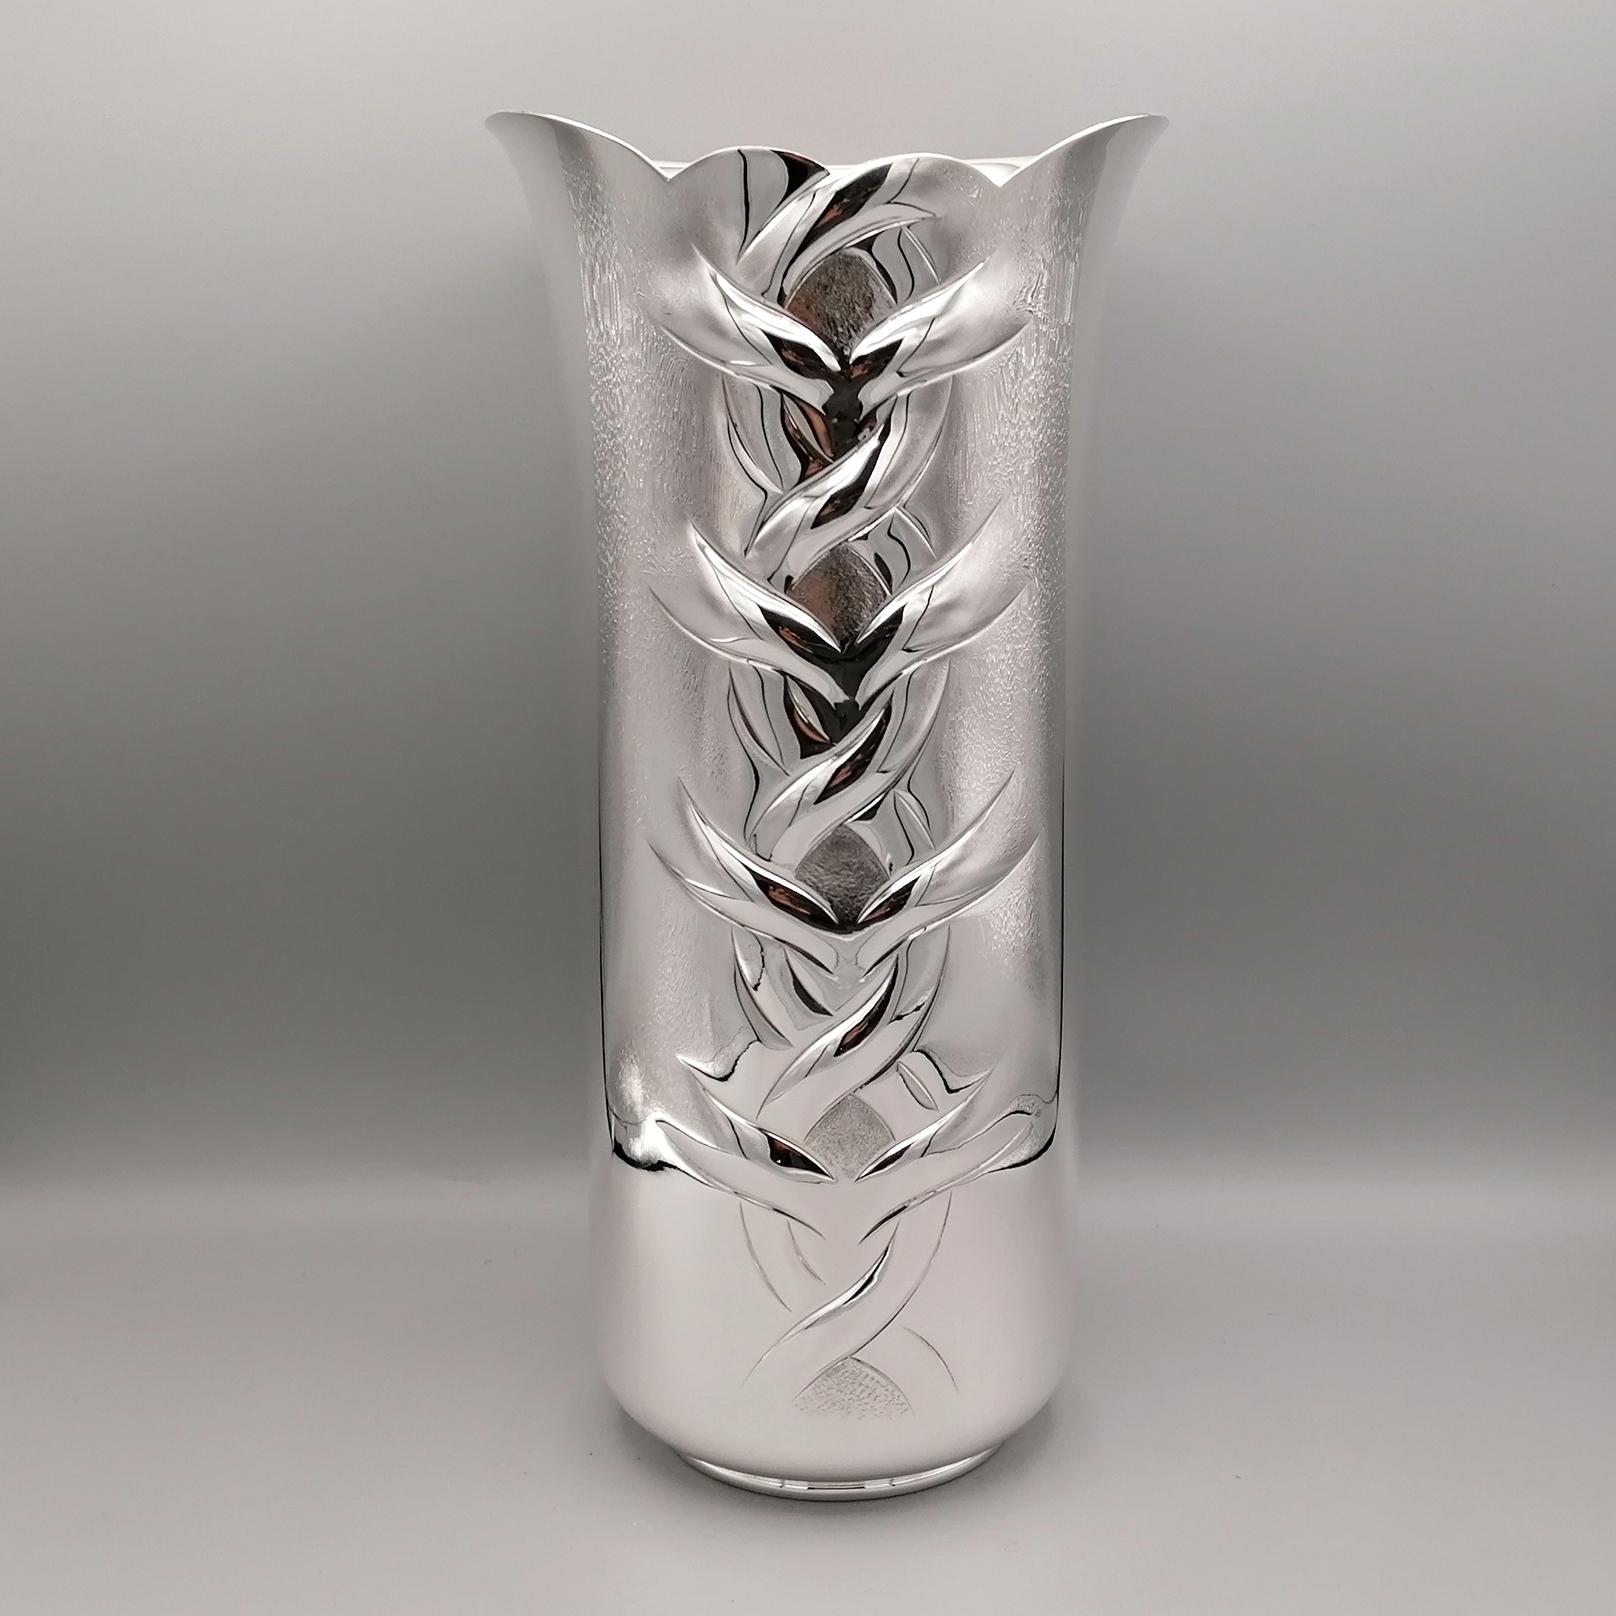 Vollständig handgefertigte Vase aus Sterlingsilber.
Die Struktur des Körpers ist zylindrisch und verbreitert sich leicht im oberen Teil, der sogenannten Vasenöffnung.
Die Vase ist glatt und glänzend und zeichnet sich durch einen zentralen Überhang